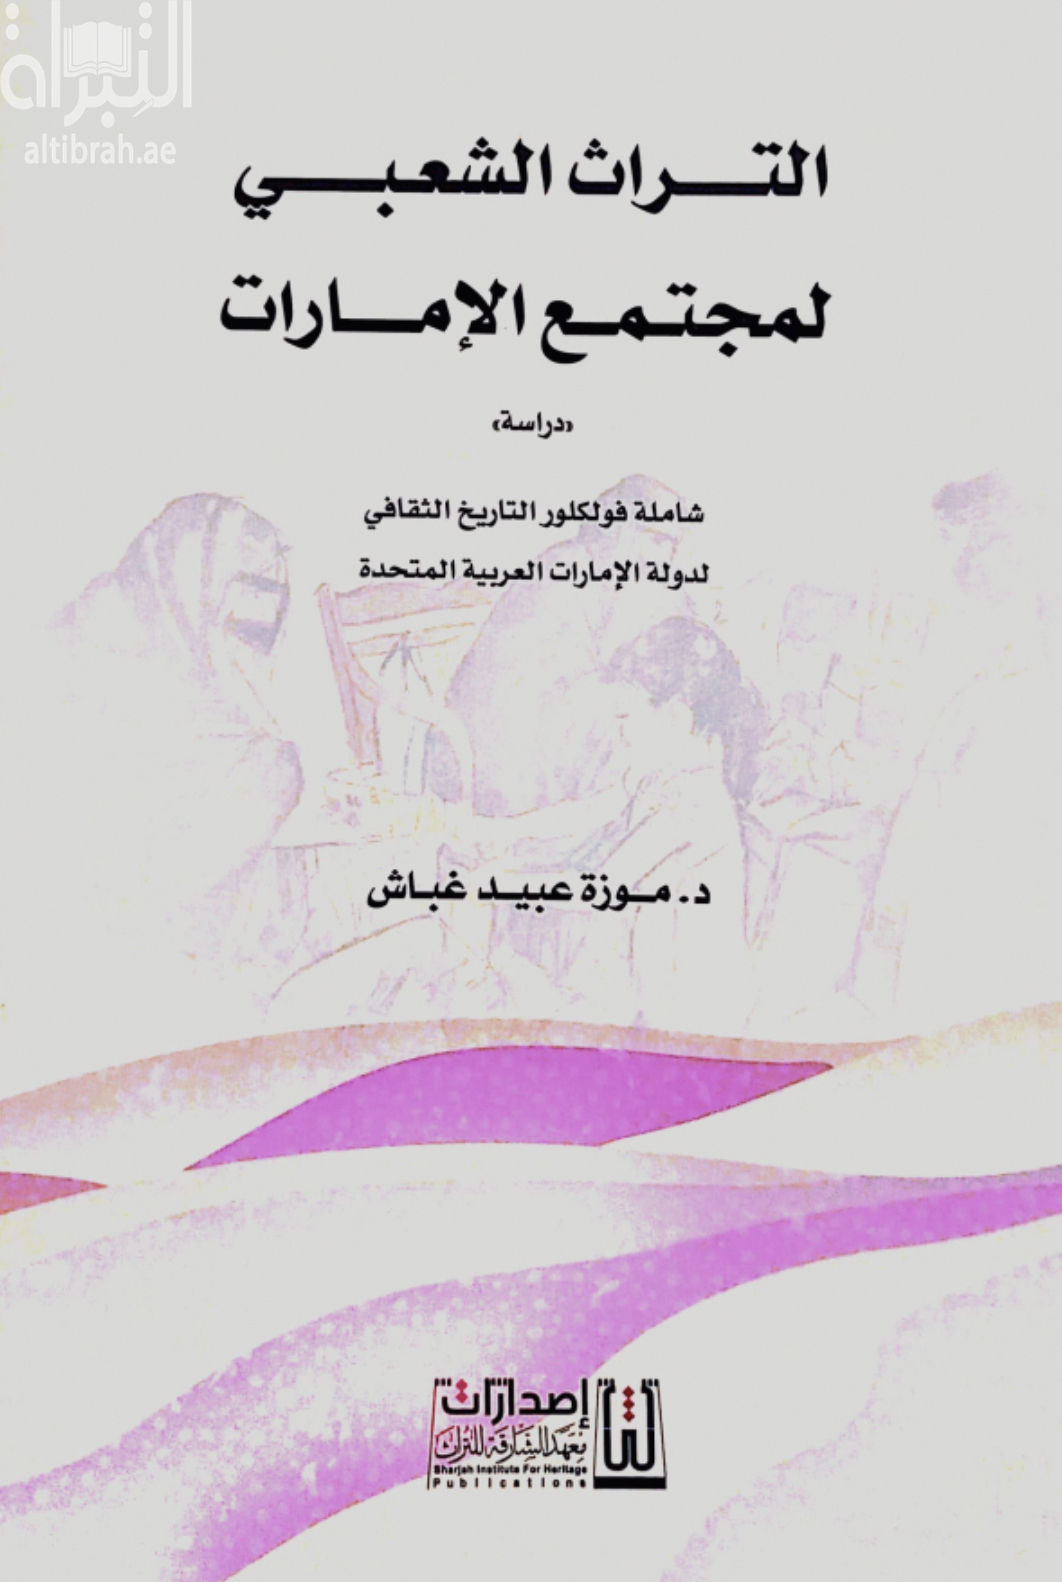 كتاب التراث الشعبي لمجتمع الإمارات - دراسة - شاملة فولكلور التاريخ الثقافي لدولة الإمارات العربية المتحدة